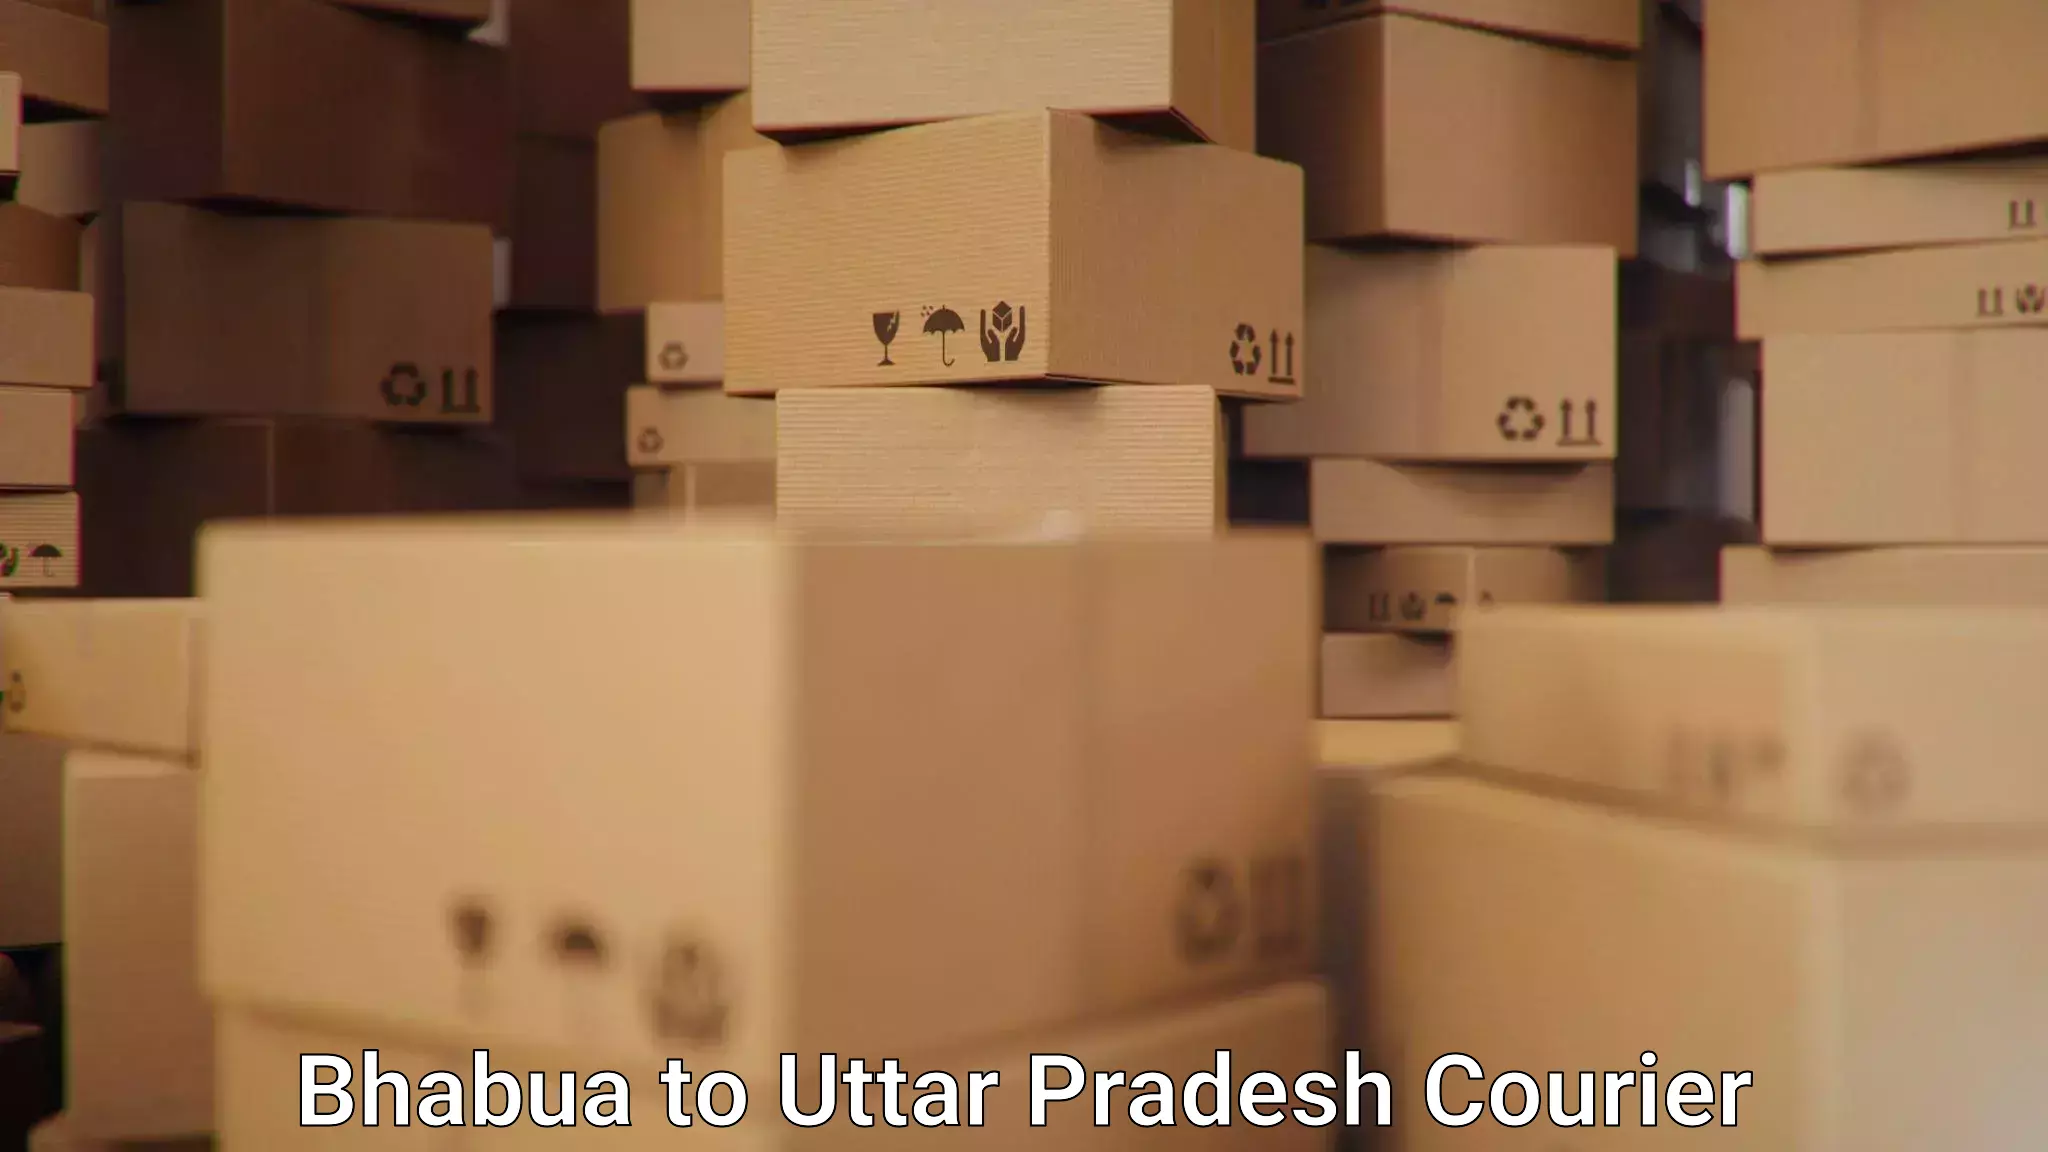 Efficient logistics management Bhabua to IIT Varanasi